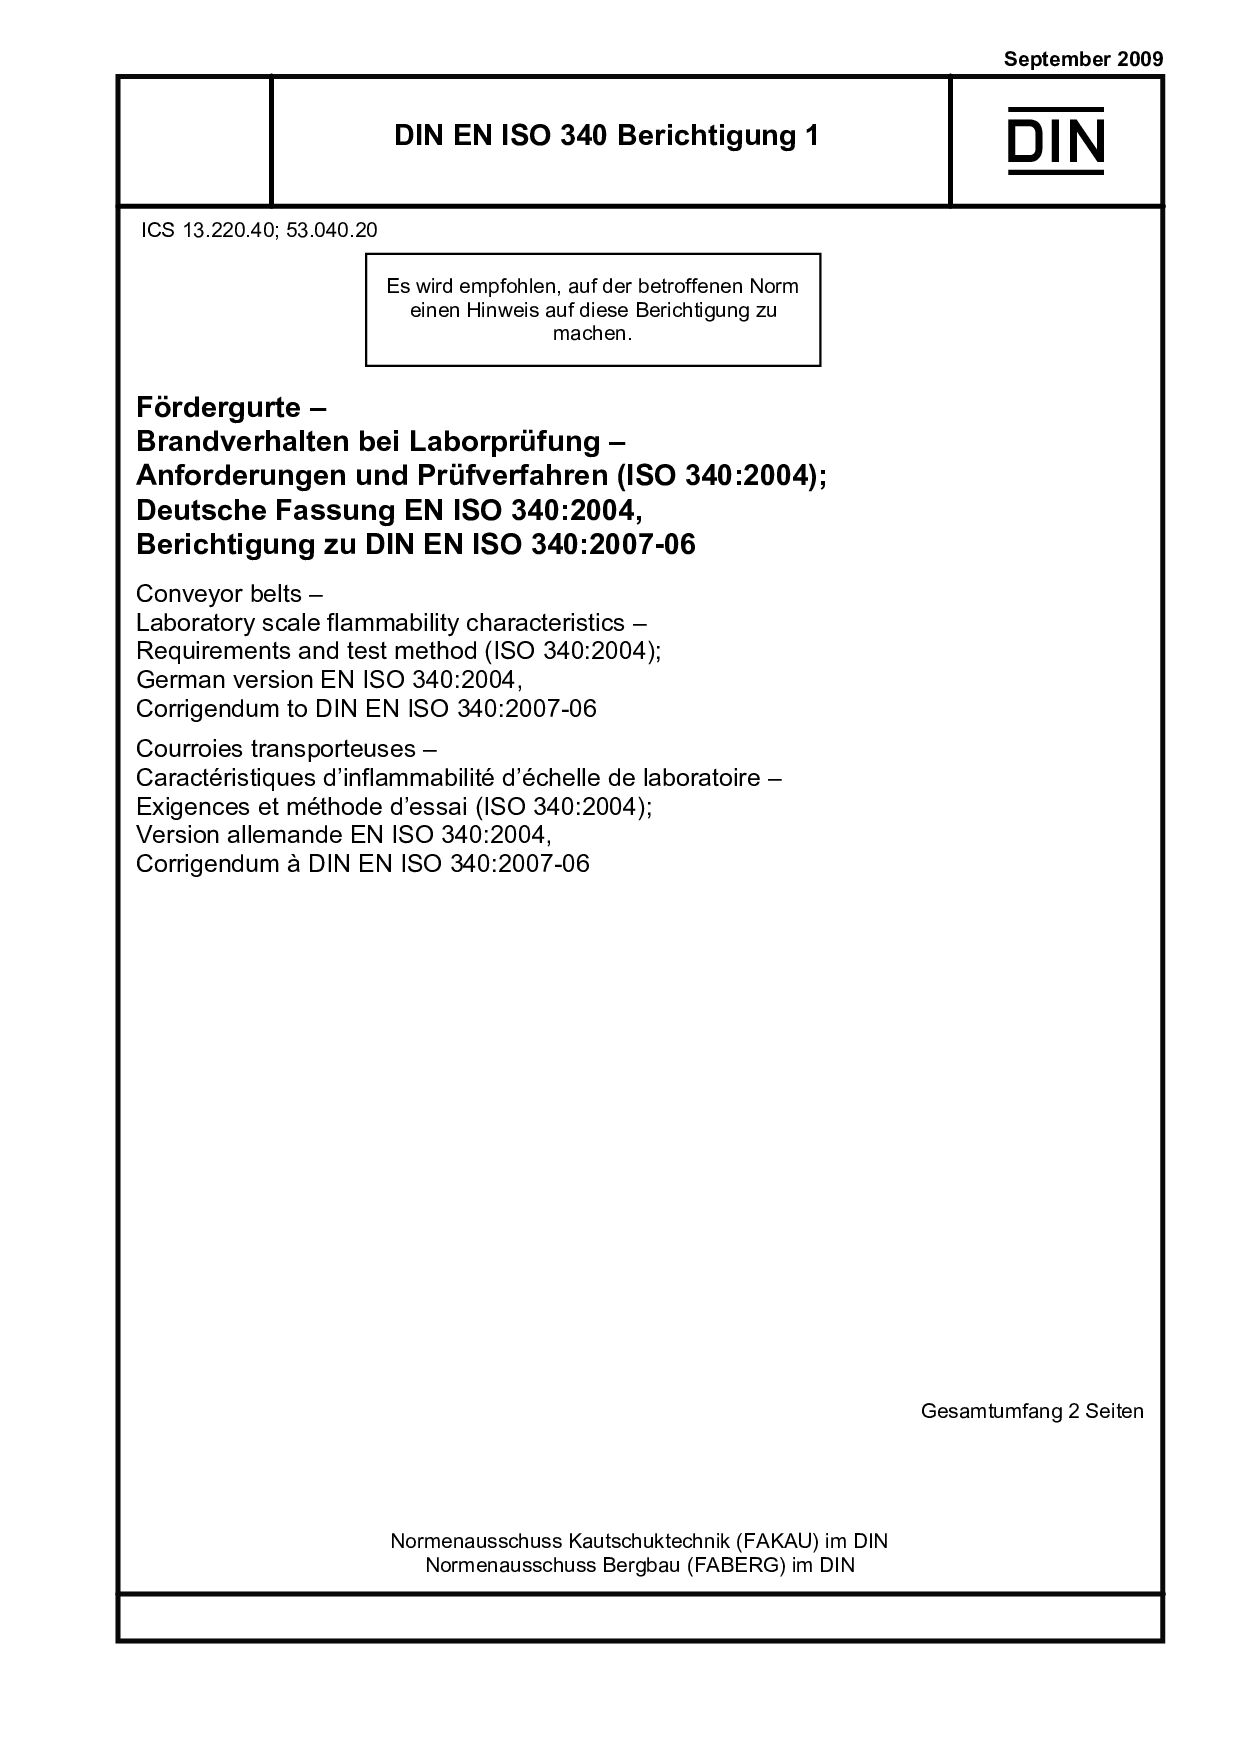 DIN EN ISO 340 Berichtigung 1:2009